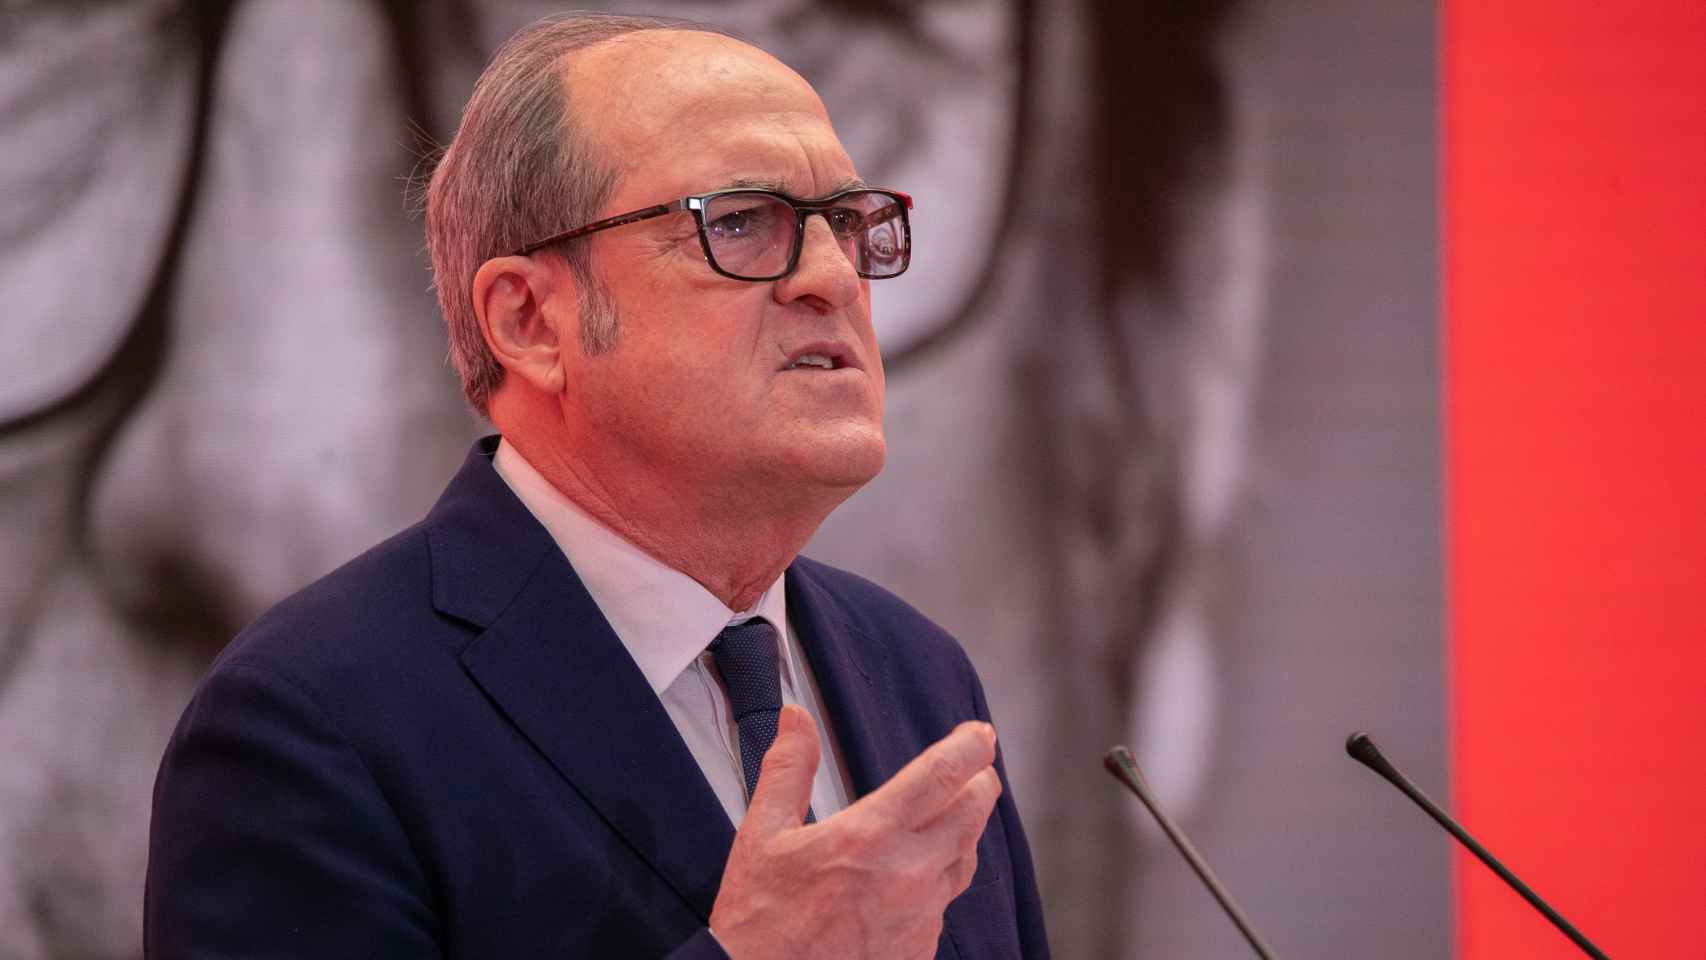 Ángel Gabilondo, candidato del PSOE a la Presidencia de la Comunidad de Madrid.